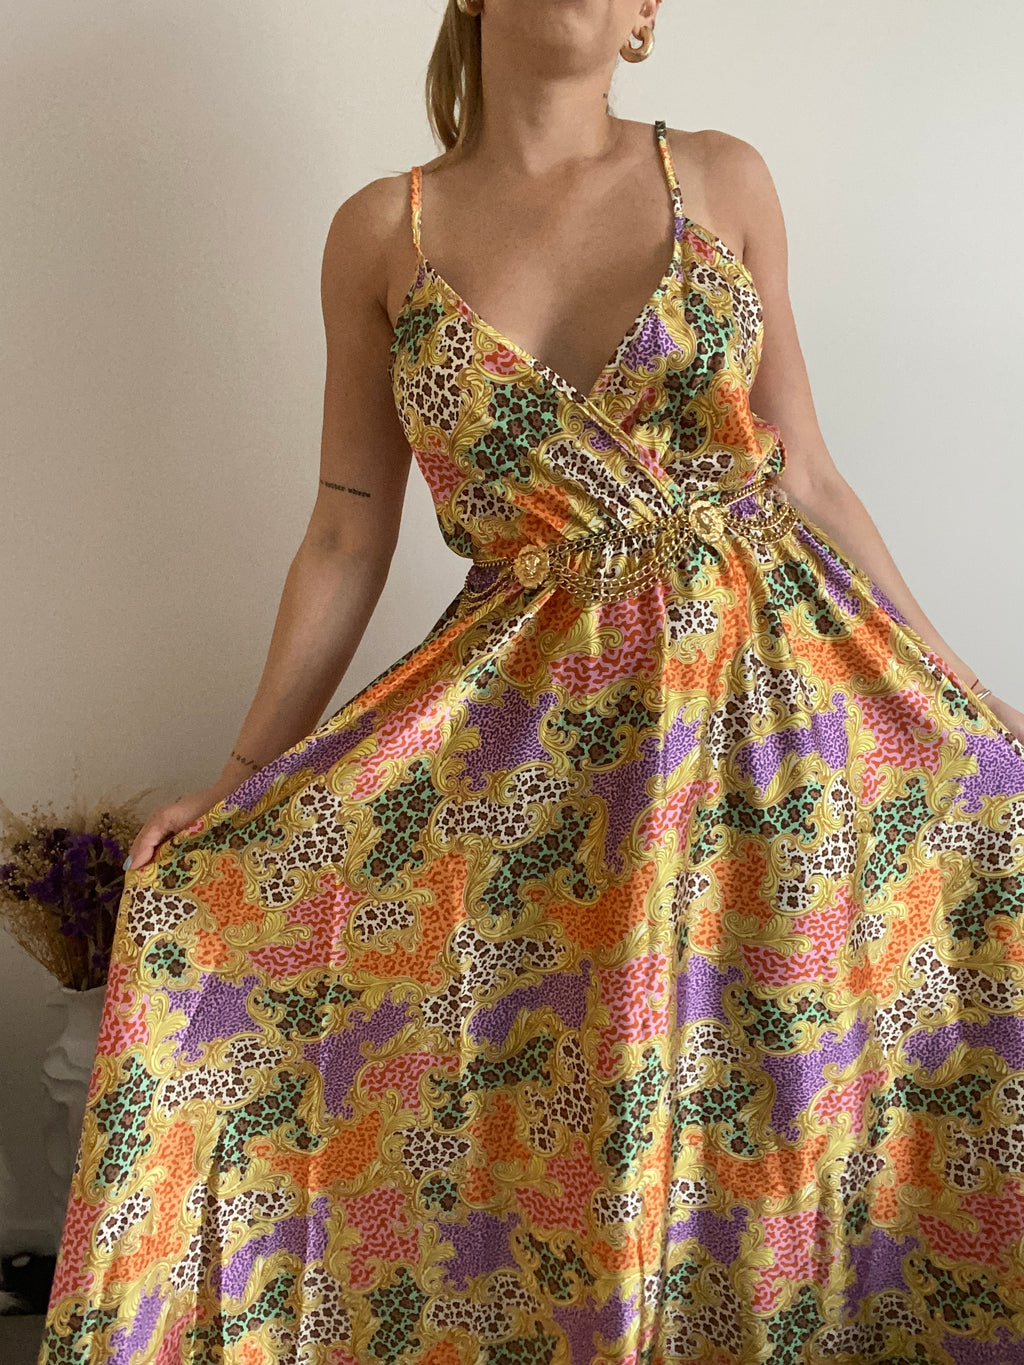 Maxxi Leopard dress